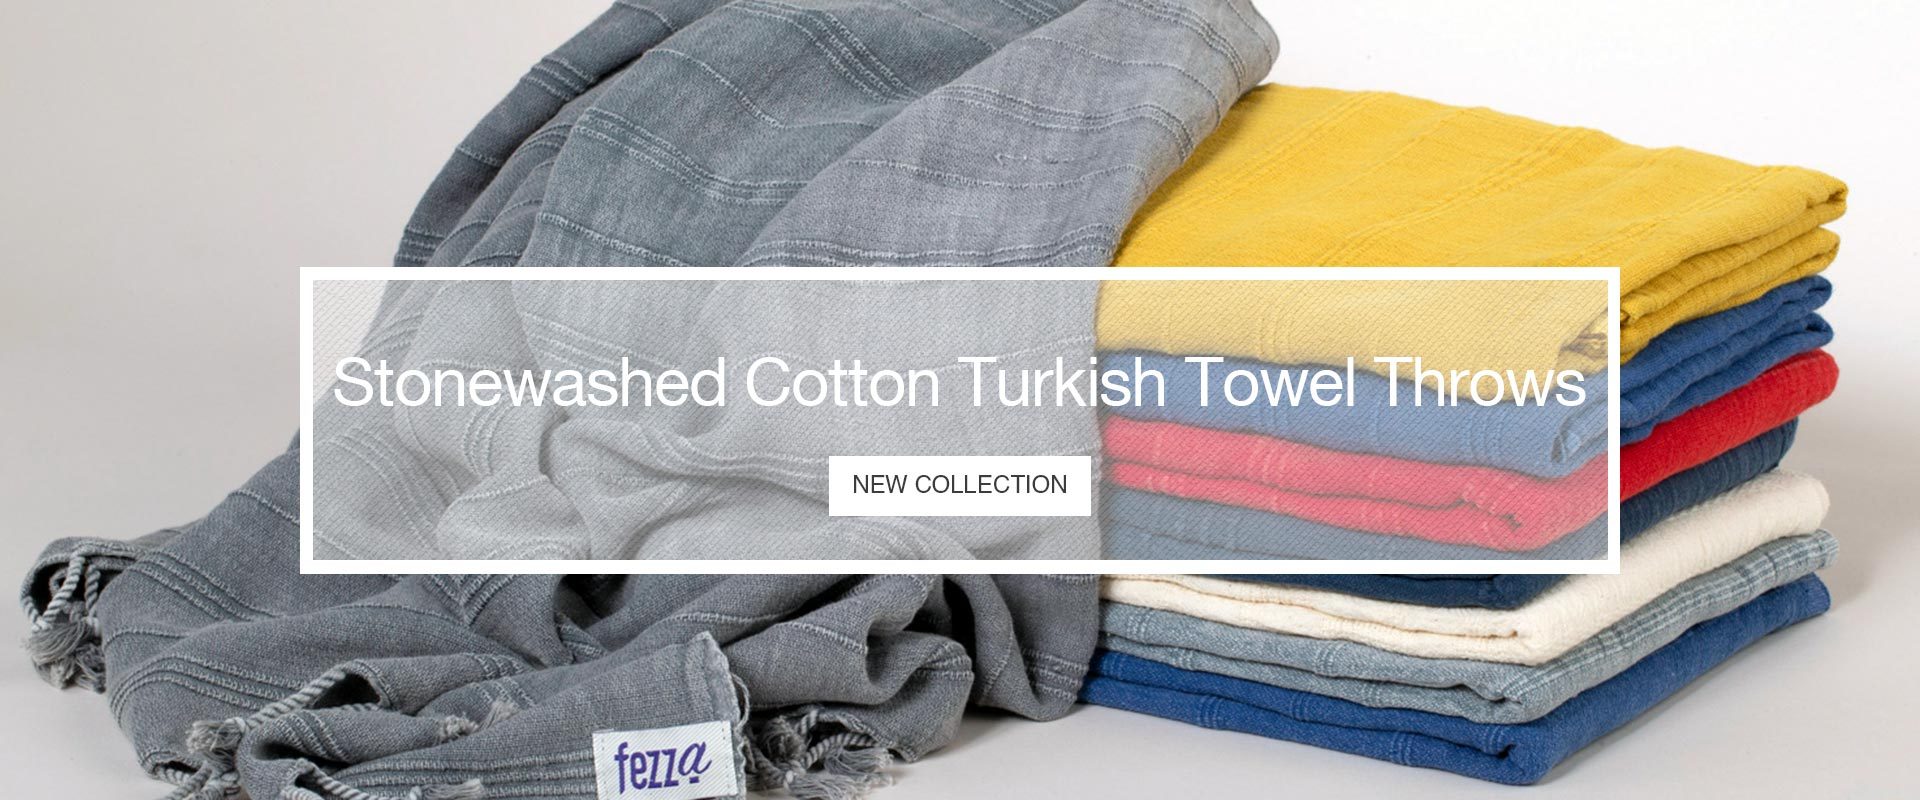 Stonewashed Cotton Turkish Towel Throws